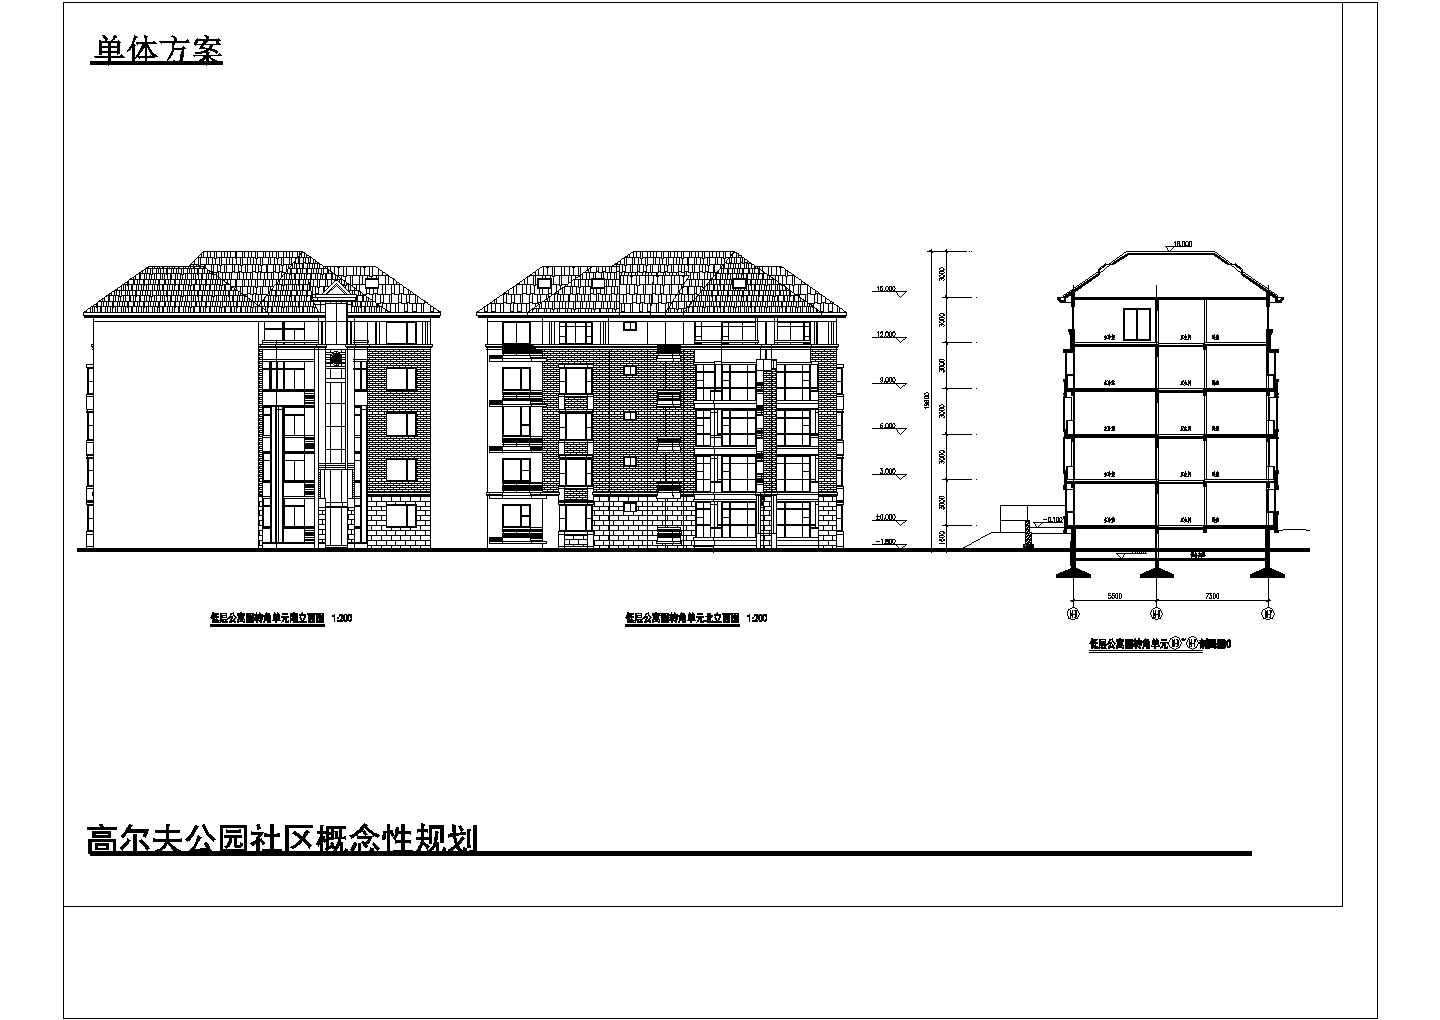 低层公寓转角方案 蝶形 5层1楼梯每层2户设计图